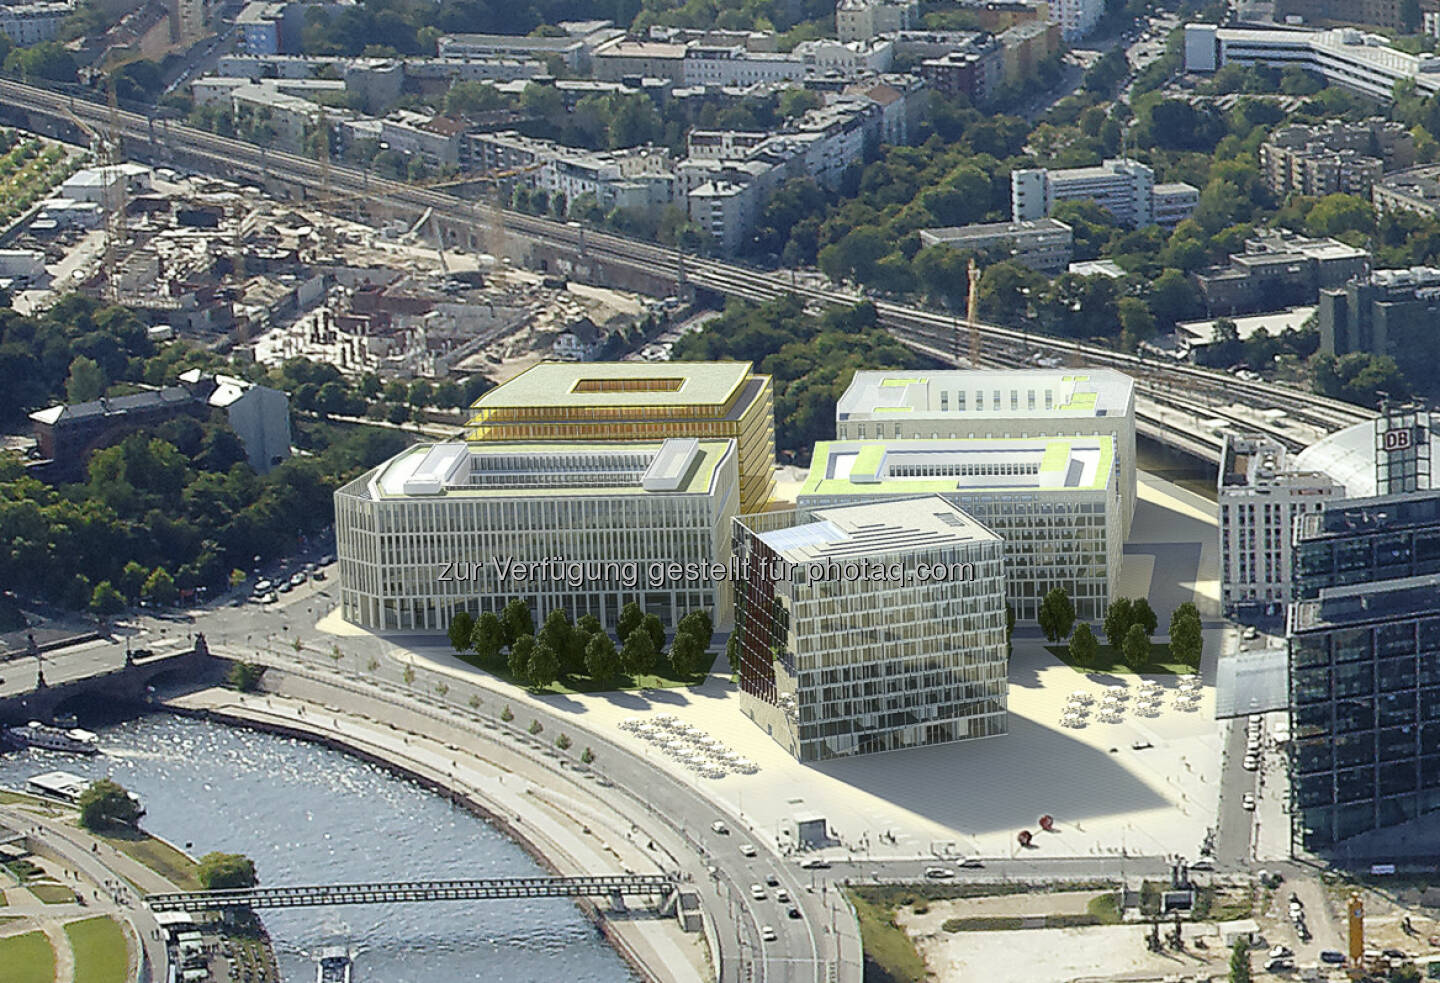 CA Immo vermietet rund 6.800 m² Büroflächen für eine weitere Projektentwicklung im Quartier Europacity in Berlin. Als neuer Mieter konnte die Anwaltskanzlei White & Case LLP gewonnen werden